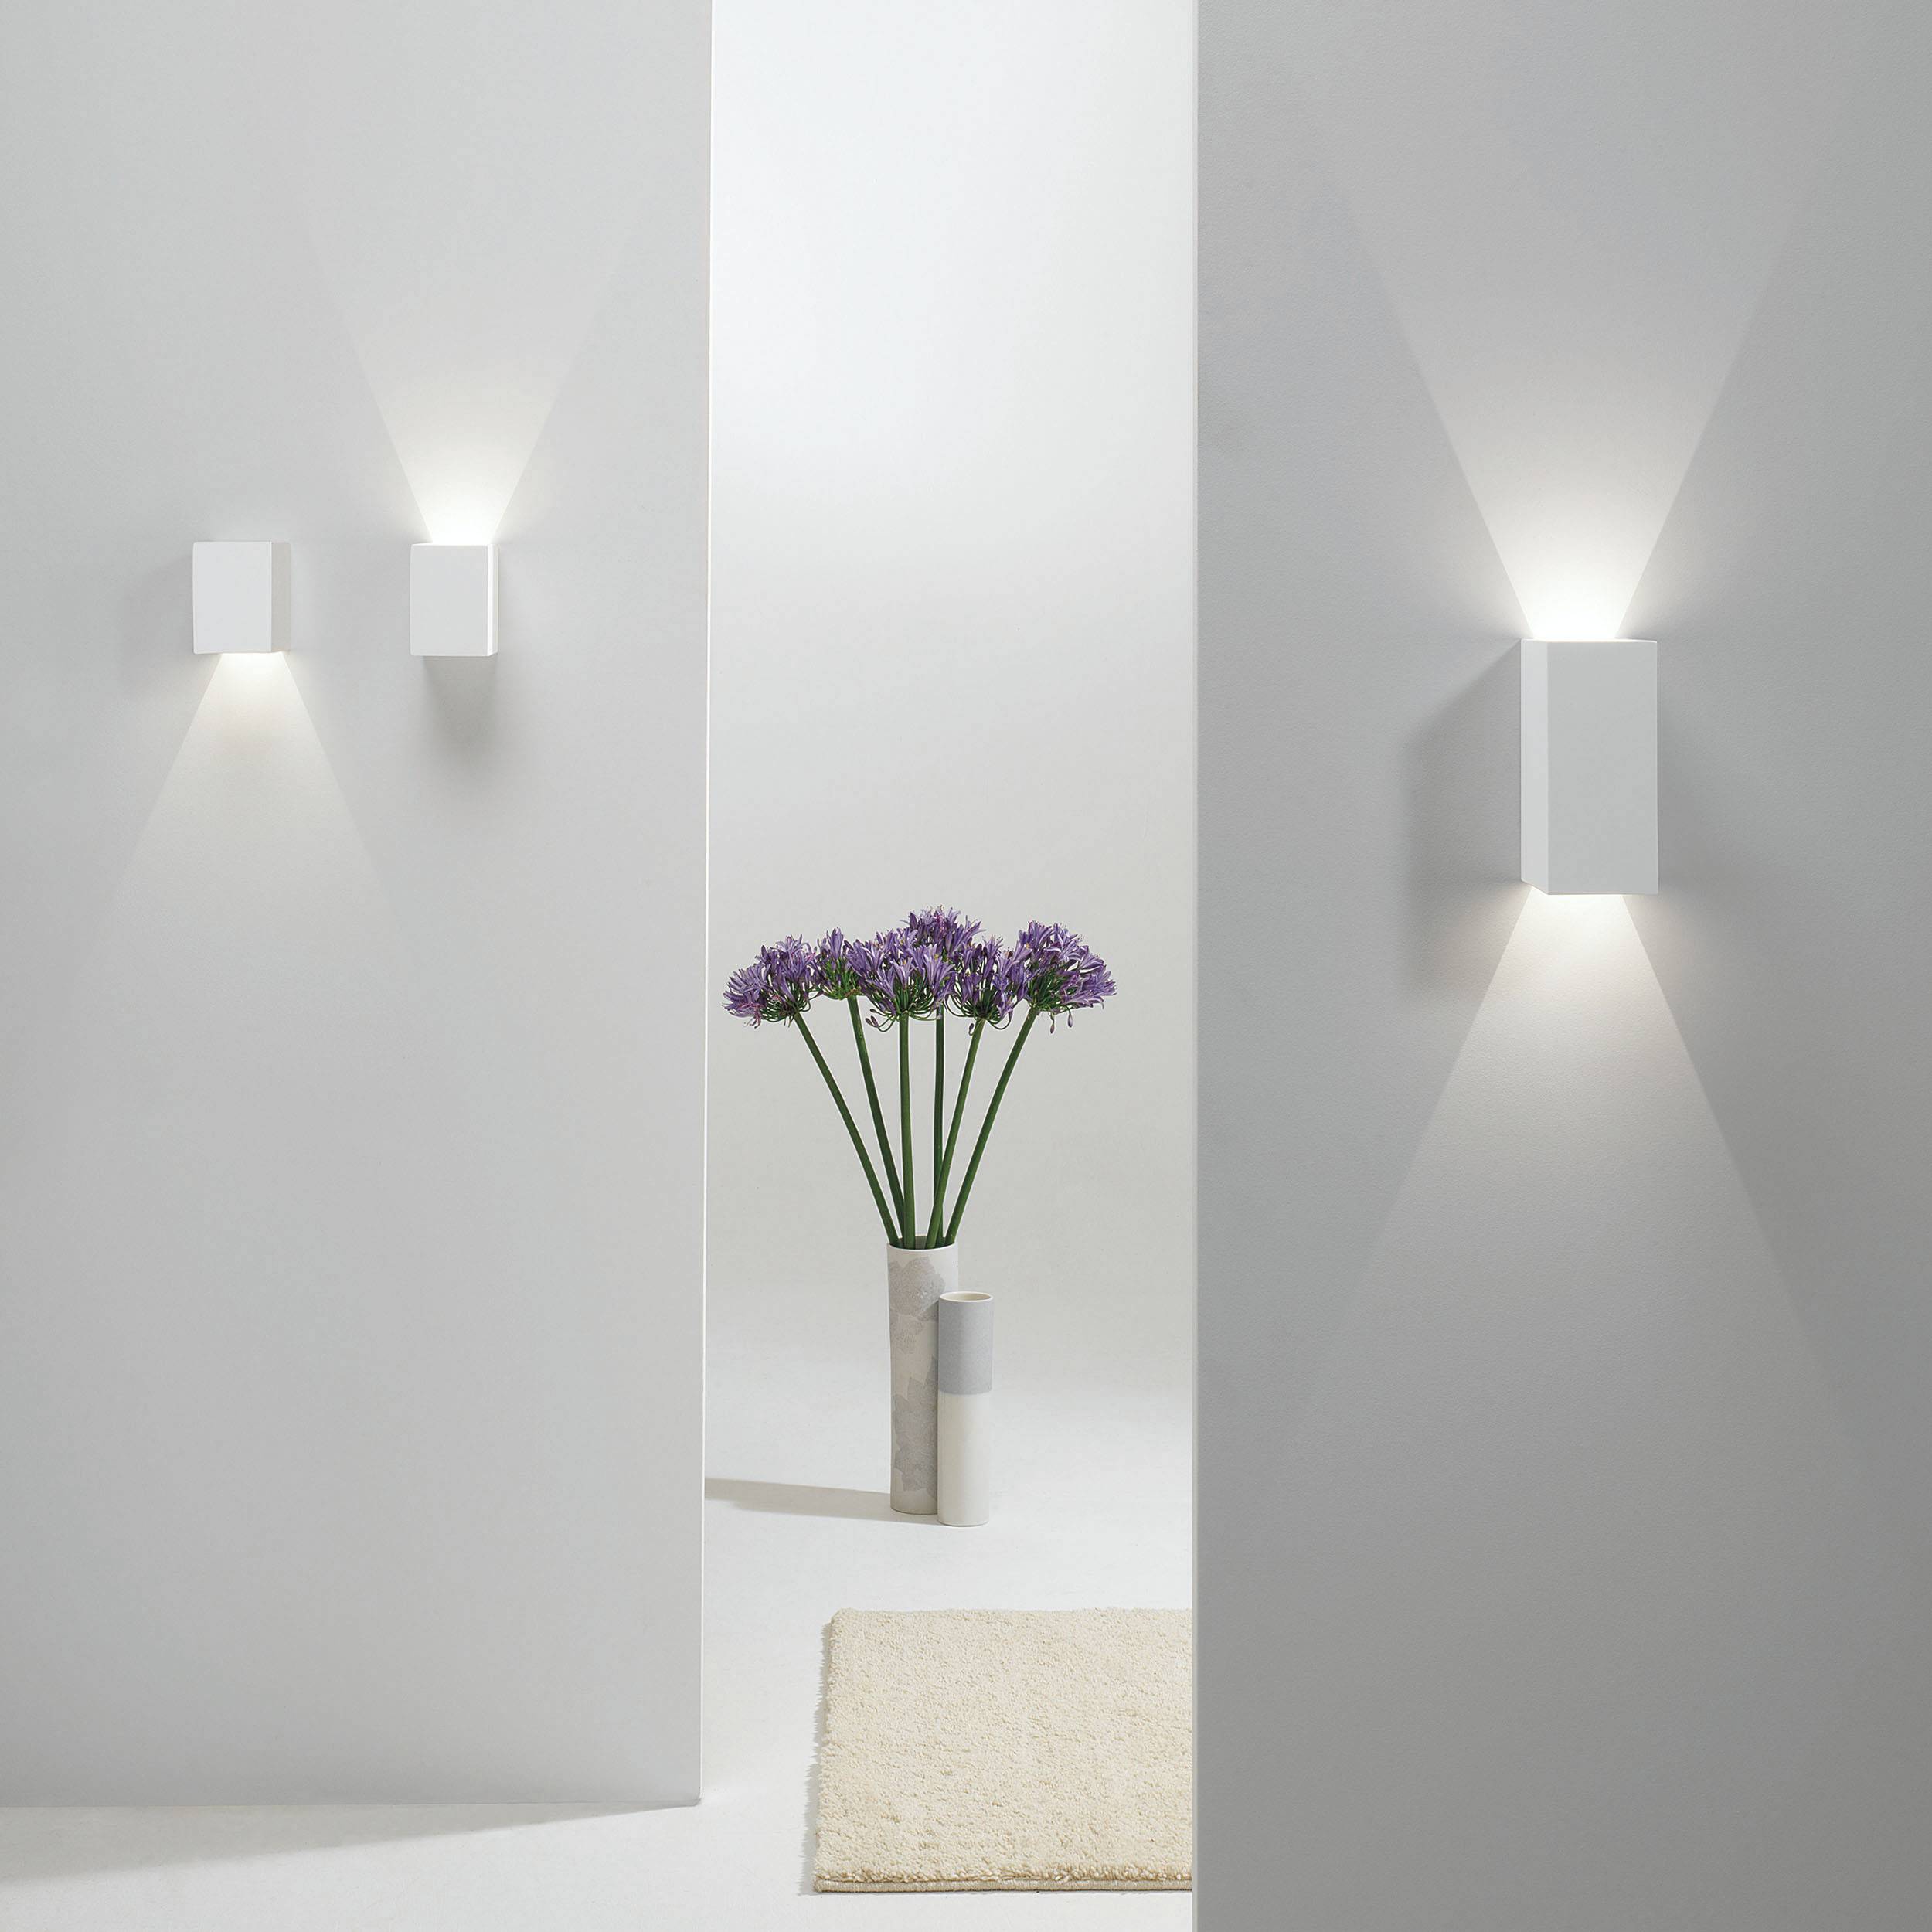 Светильники на стену — 60 фото лучших идей и красивого дизайна современных светильников